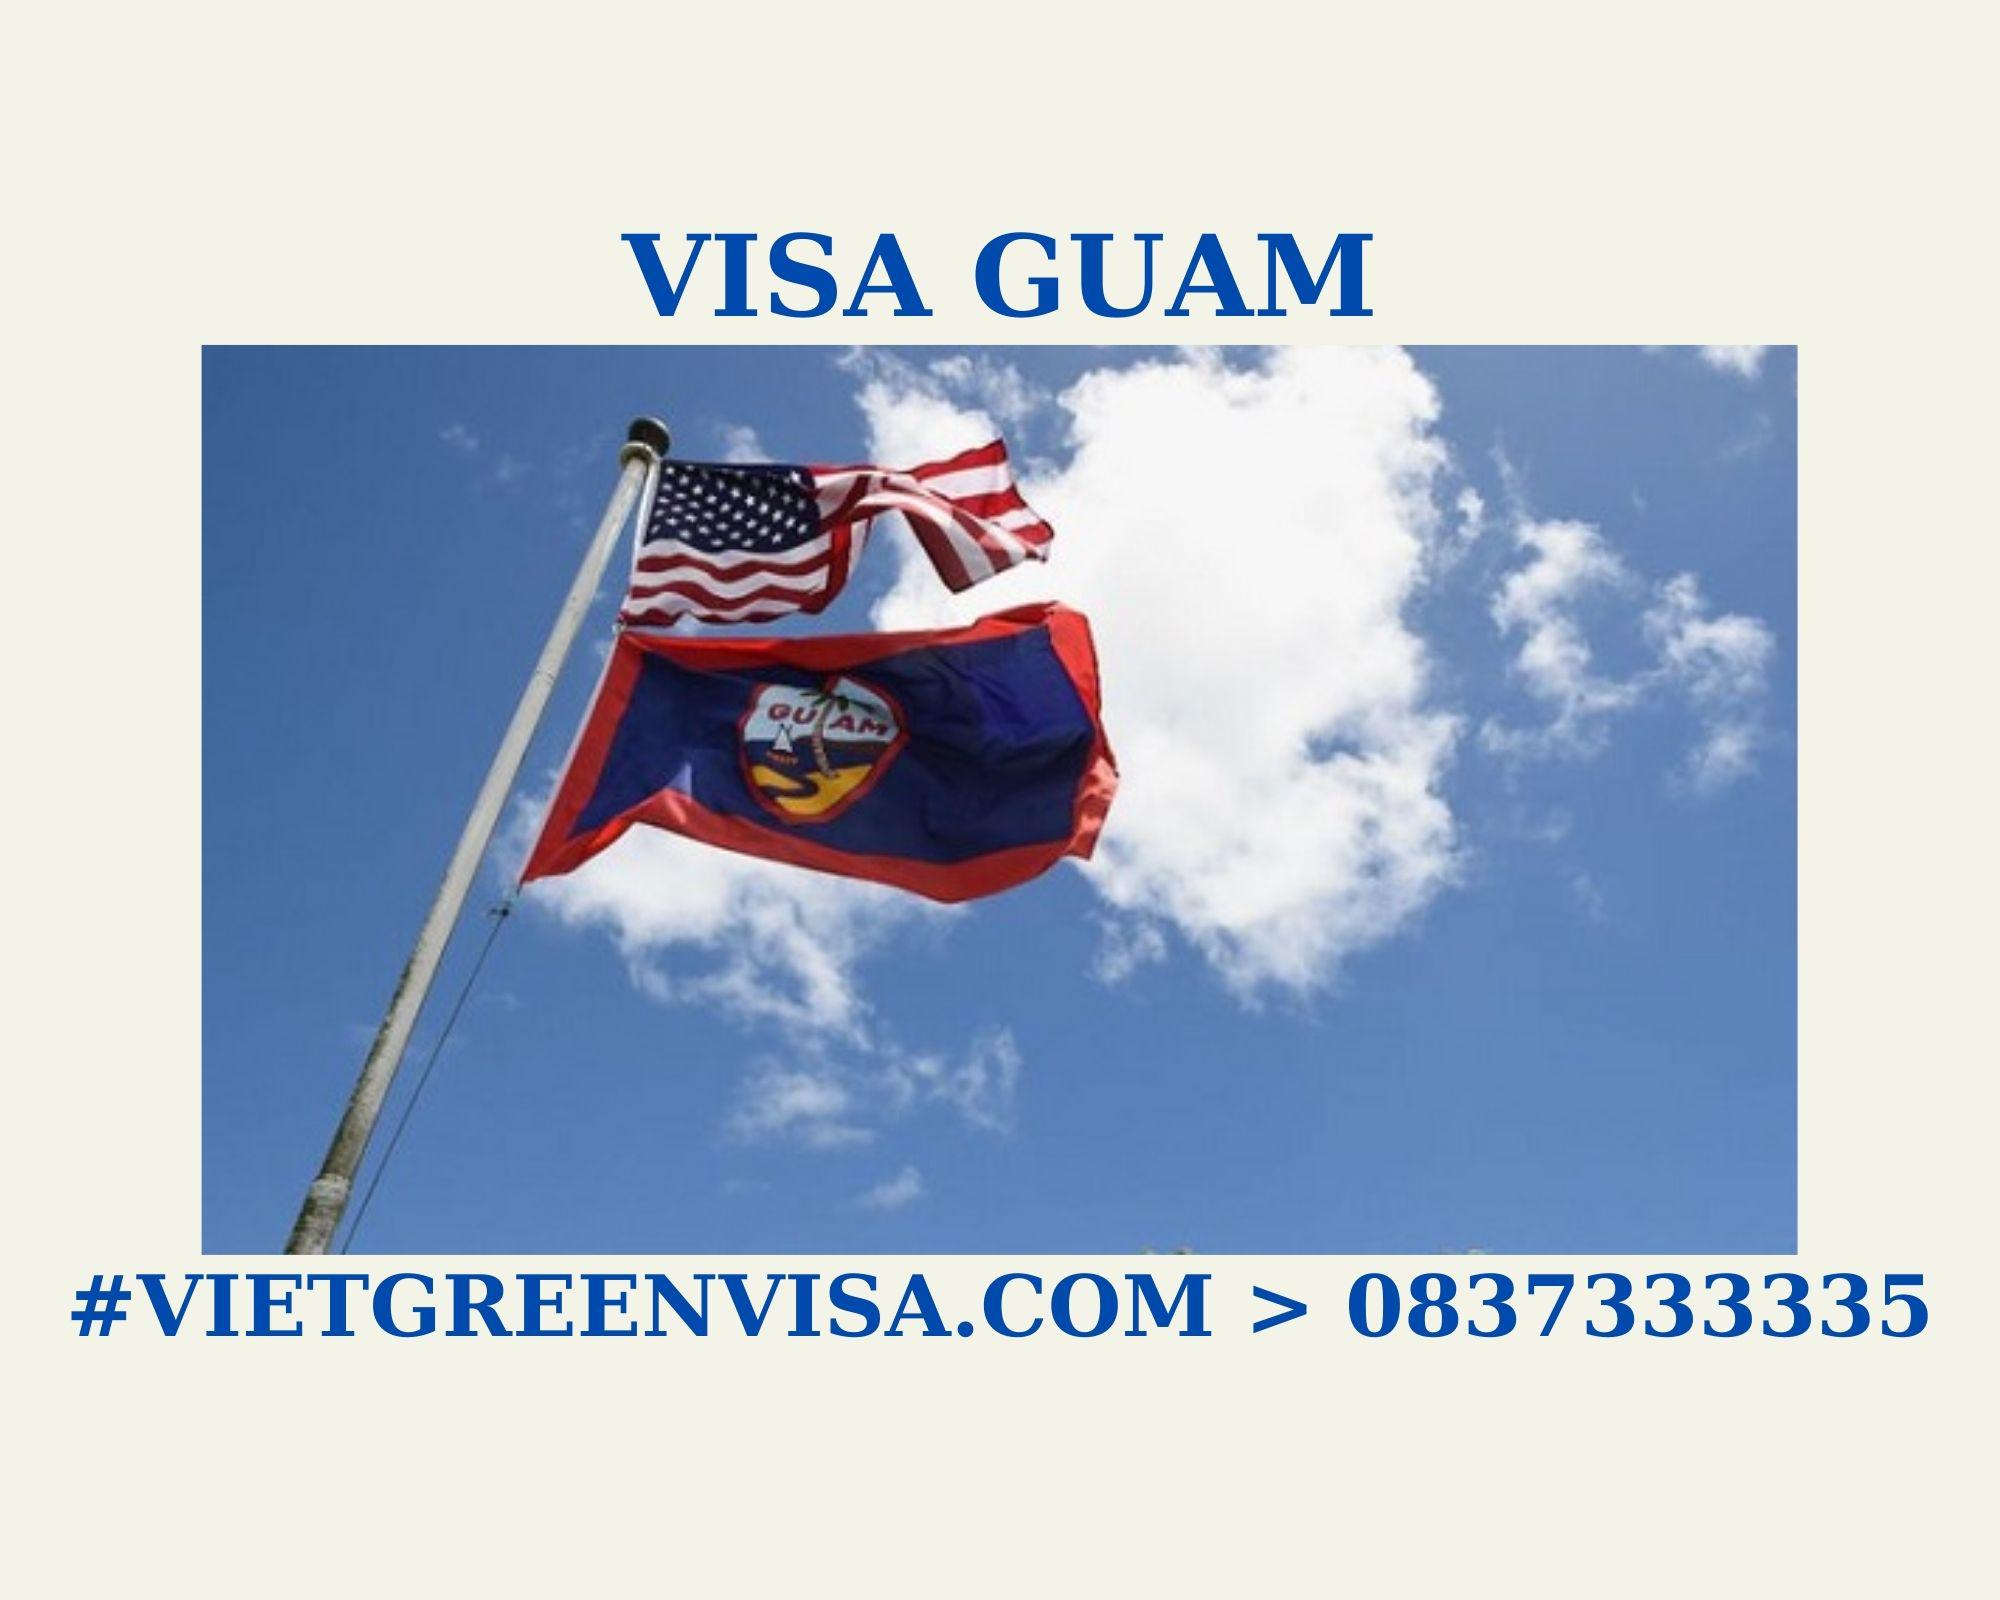 Làm Visa Guam thăm thân uy tín, nhanh chóng, giá rẻ